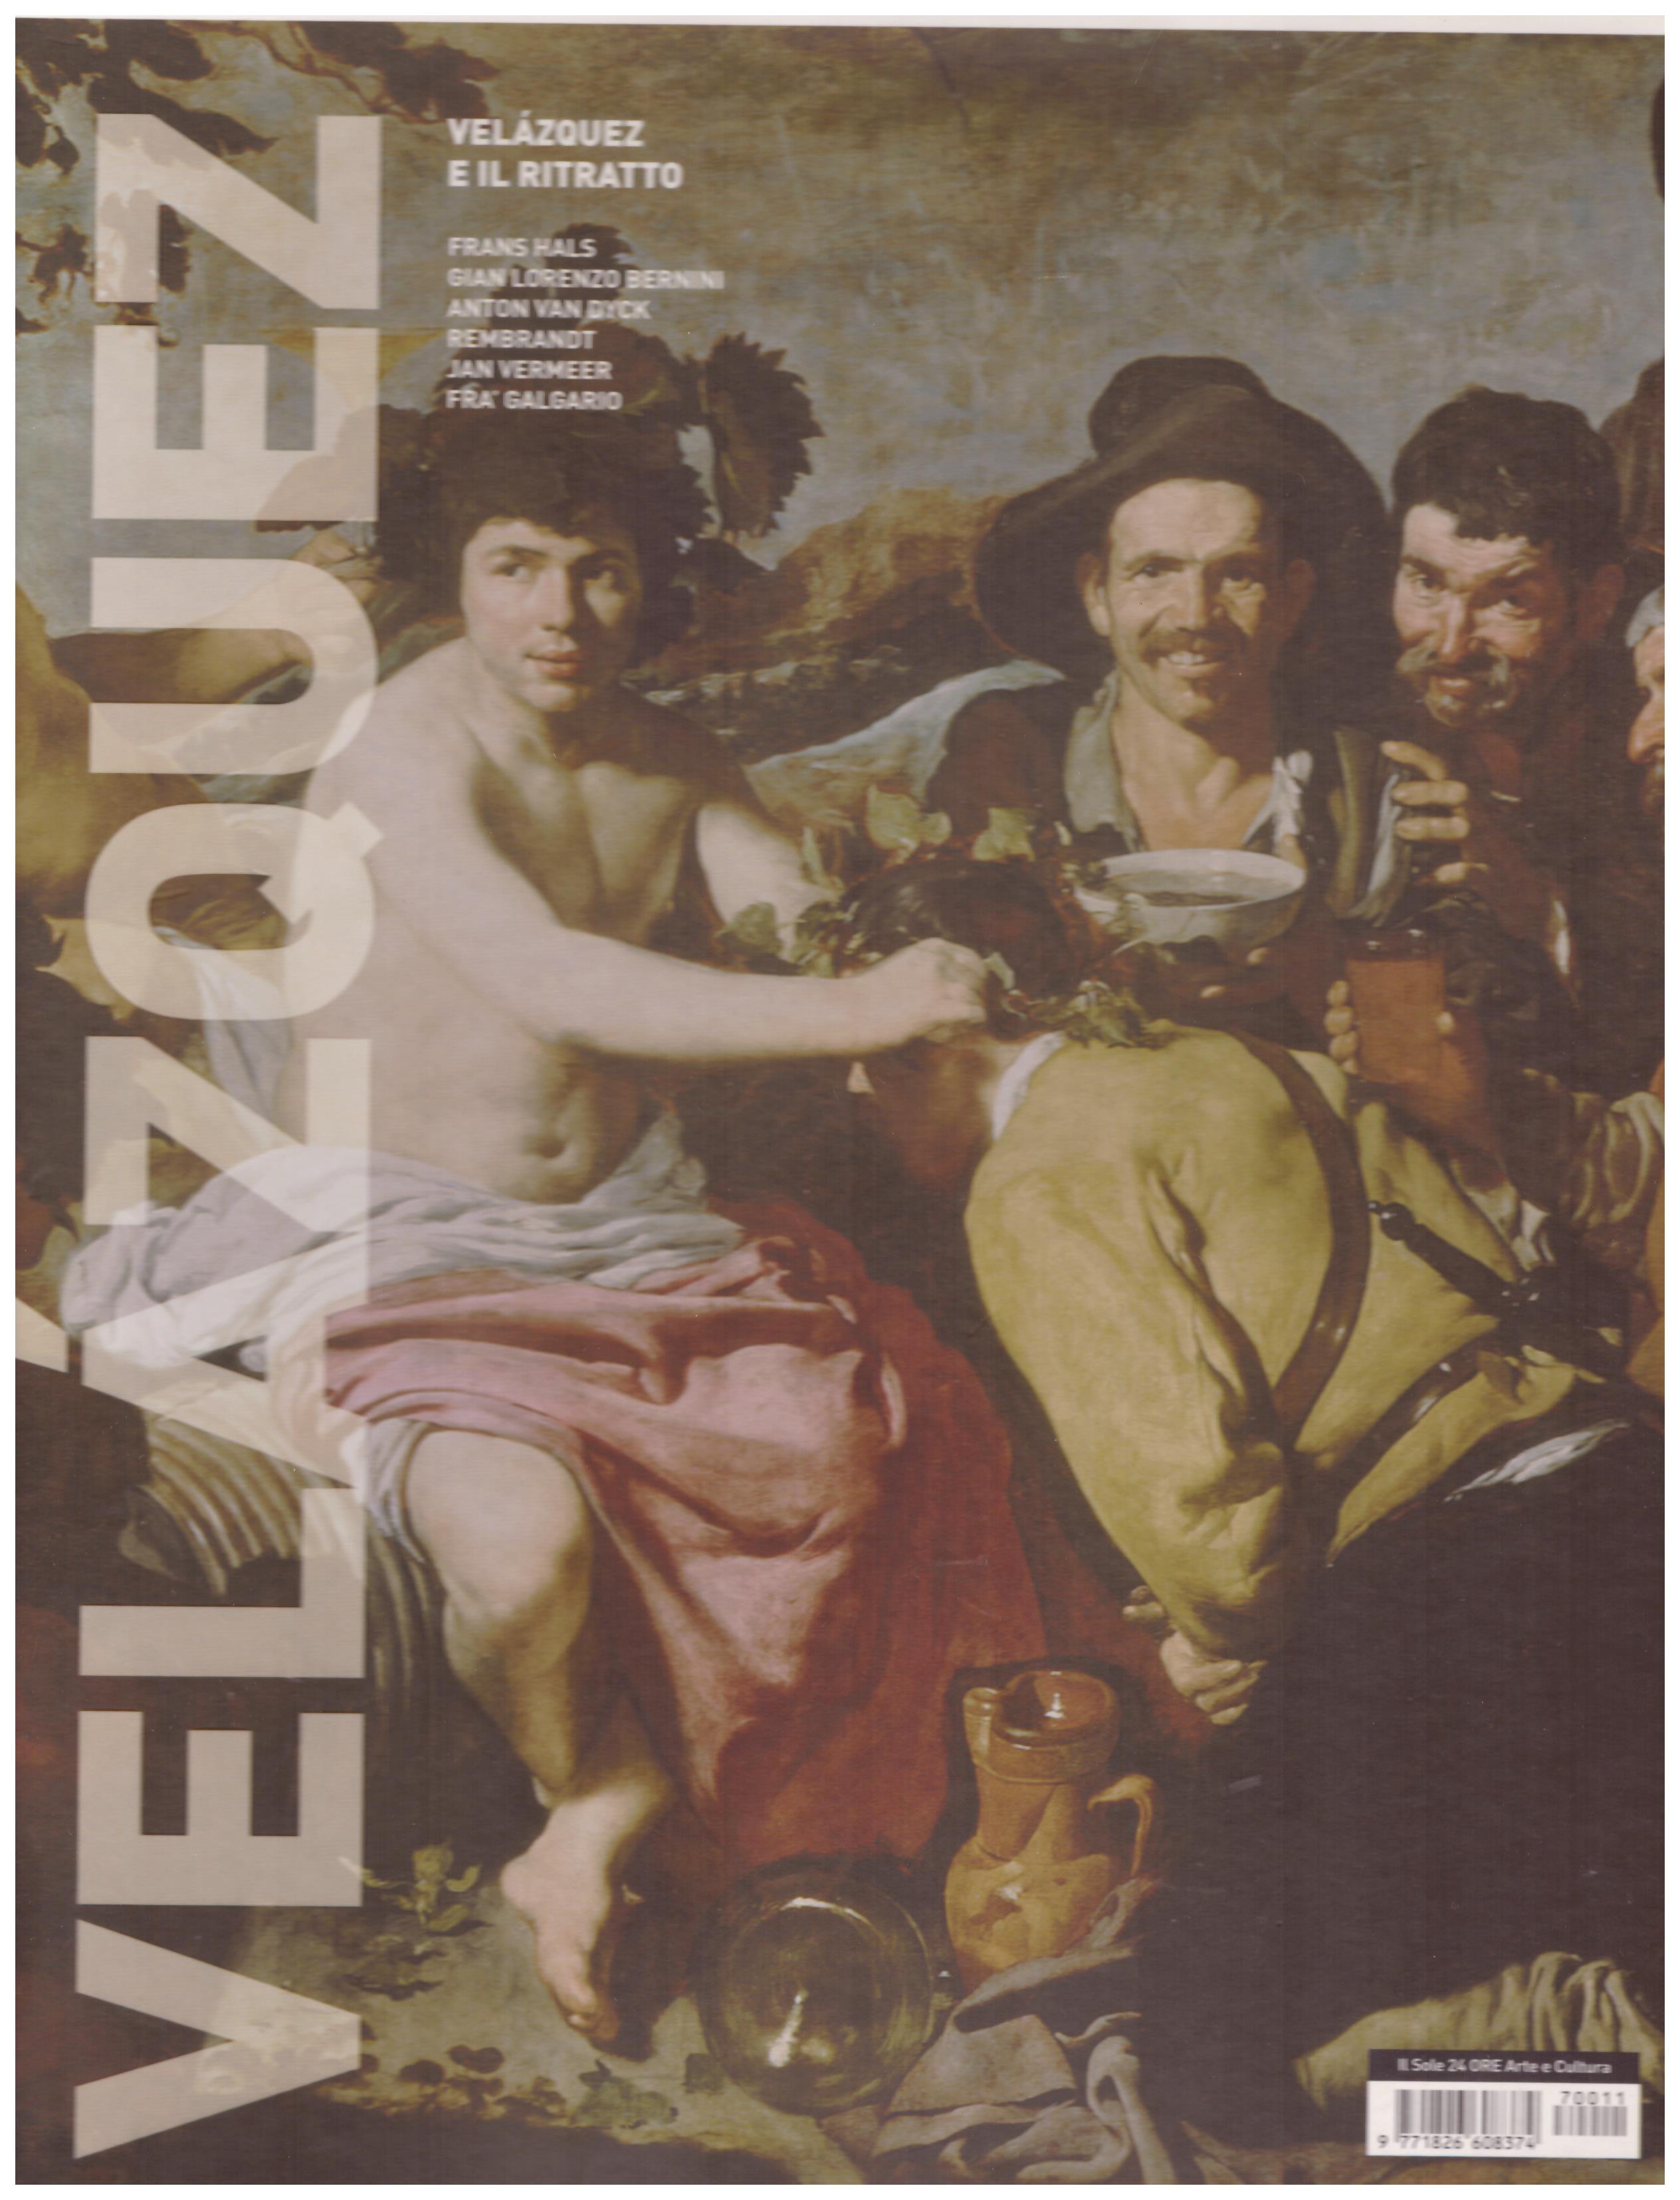 Titolo:Velazquez e il ritratto    Autore: AA.VV.    Editore: E-ducation.it, 2007 Firenze